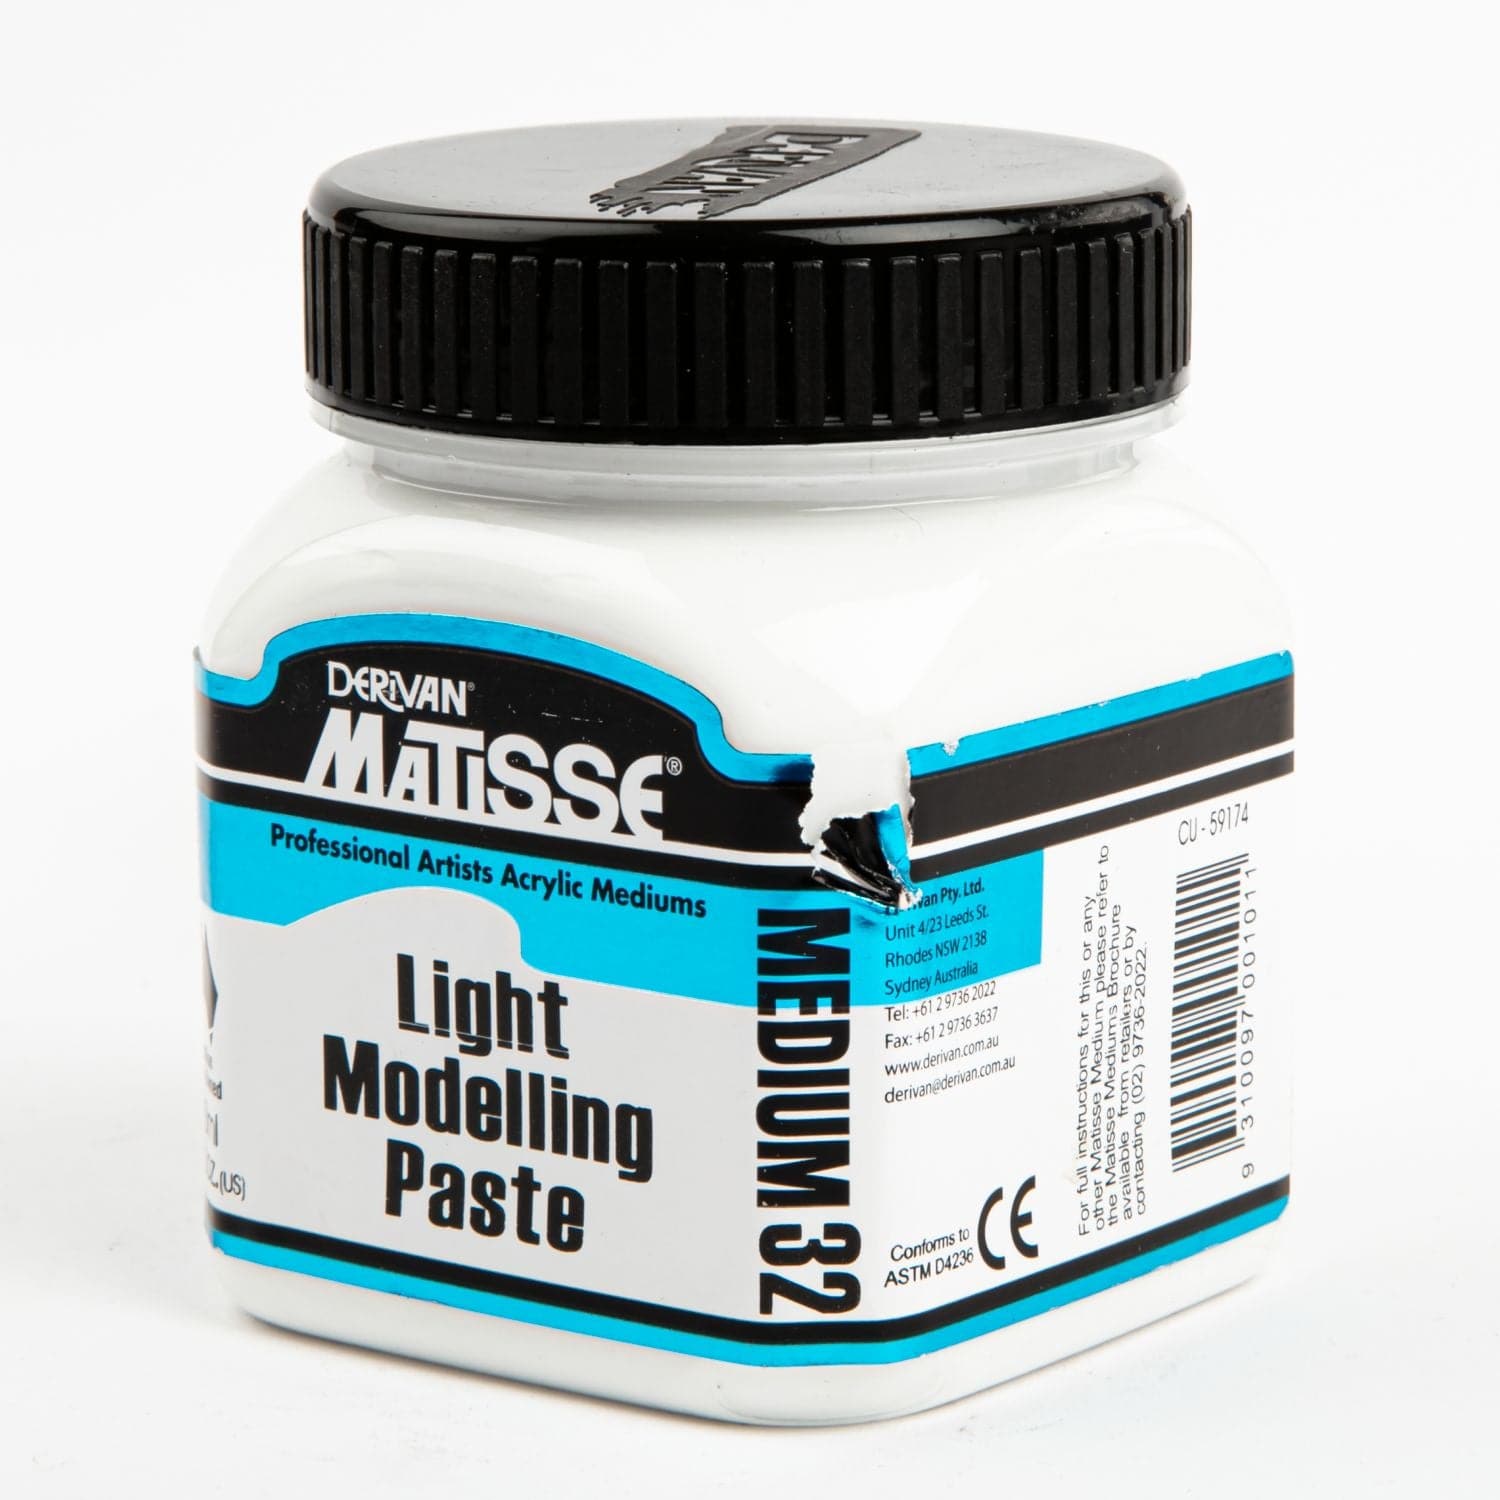 MM32 Light Modelling Paste